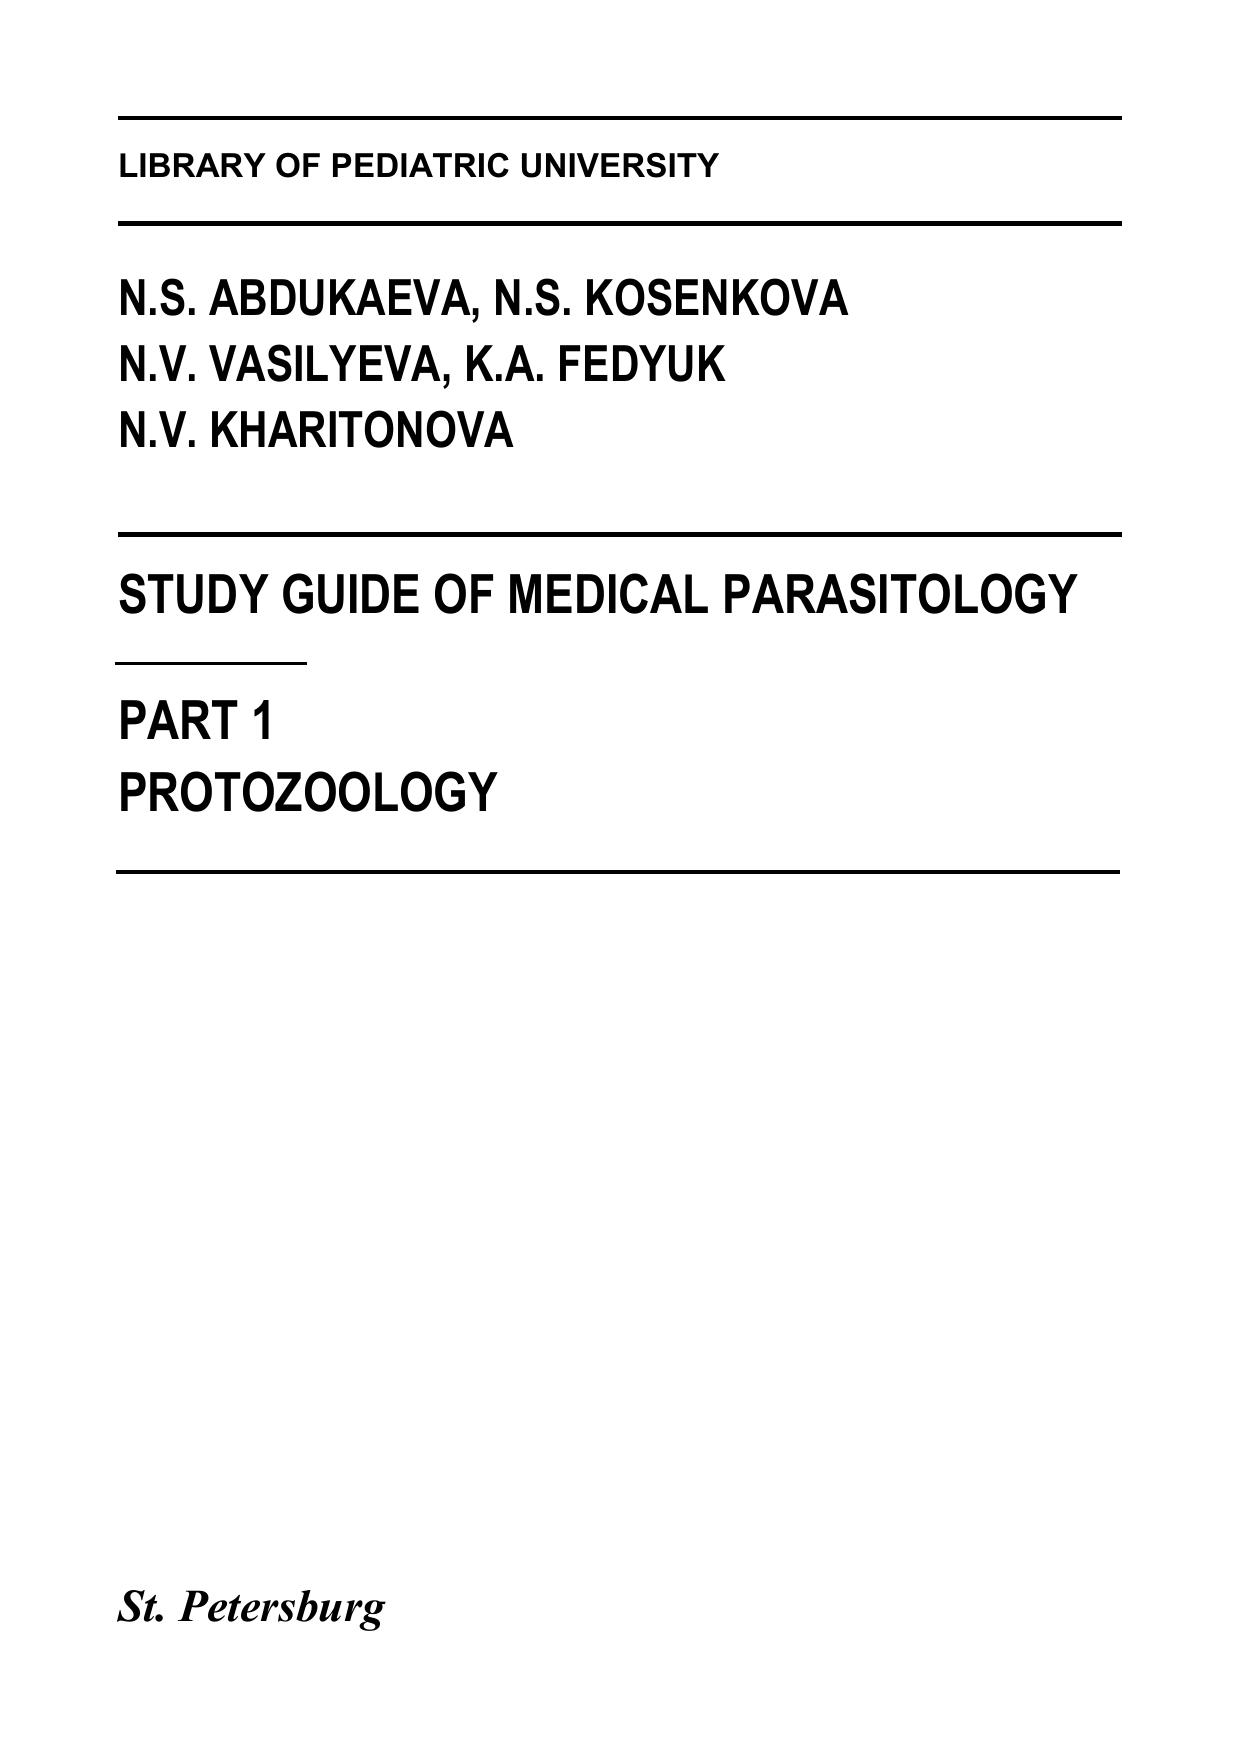 Study guide of medical parasitology. Part 1. Protozoology (2021)